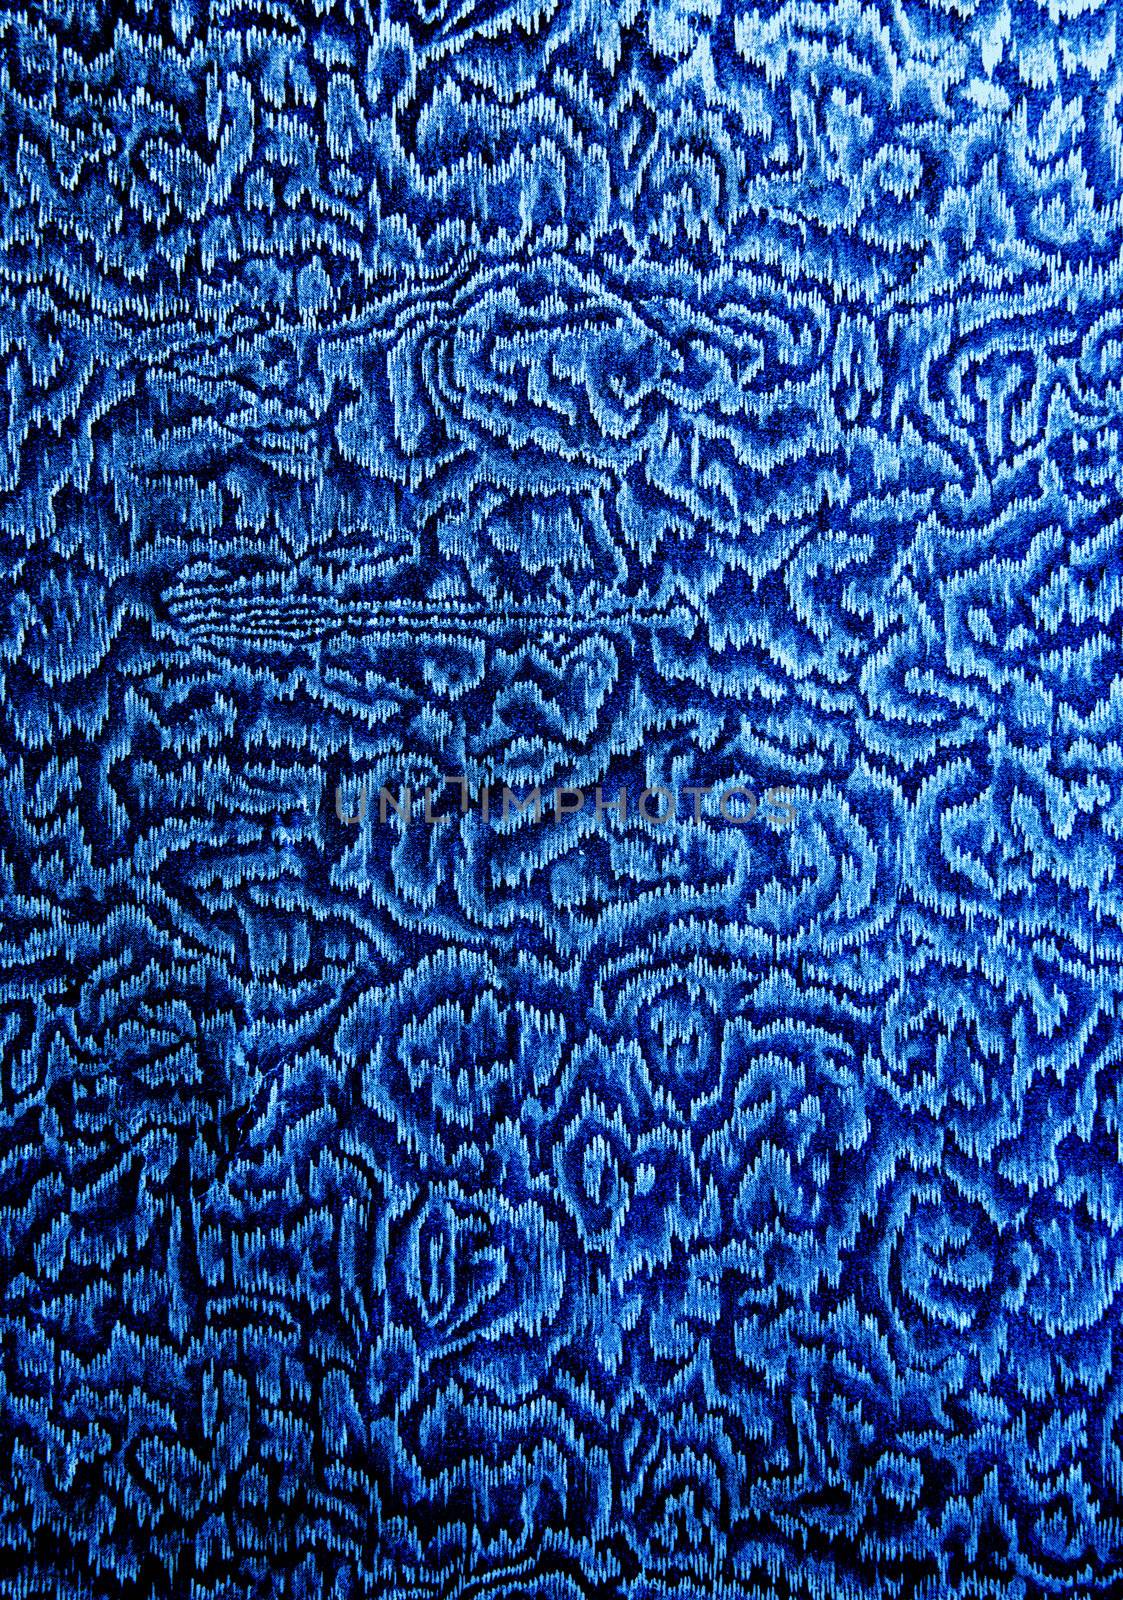 old book flyleaf blue and ornamental background